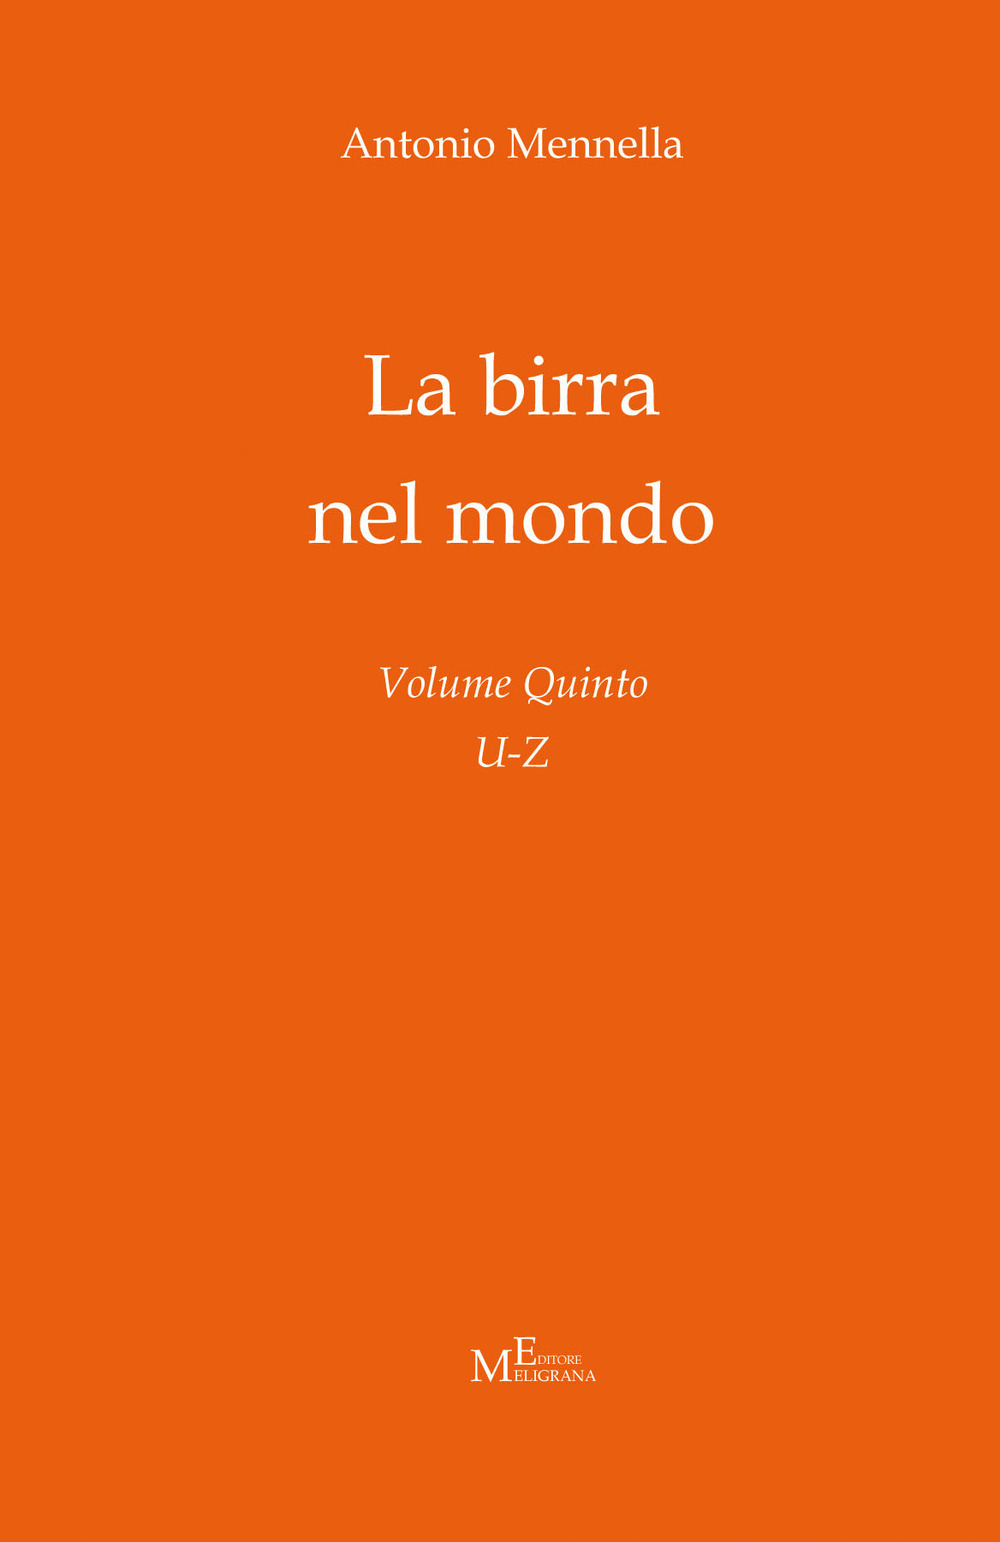 Libri Antonio Mennella - La Birra Nel Mondo Vol 05 NUOVO SIGILLATO, EDIZIONE DEL 01/03/2021 SUBITO DISPONIBILE